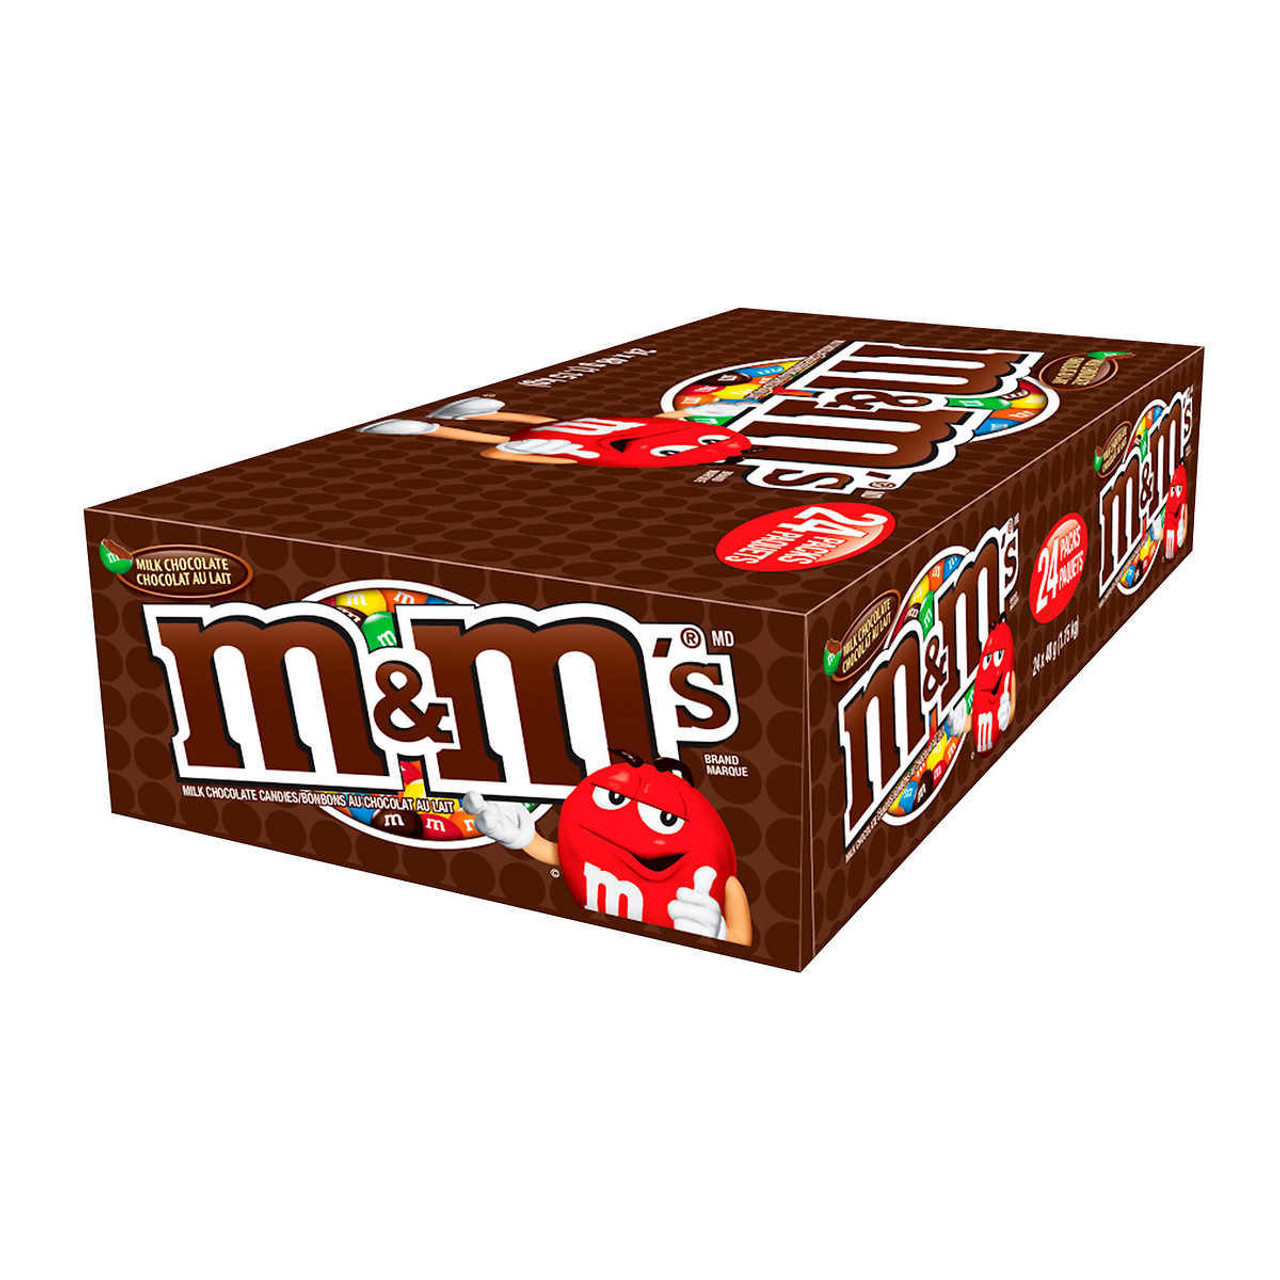 1KG M&M'S CRUNCHY Peanut & Milk Chocolate Party Mix Bulk Pack Bag